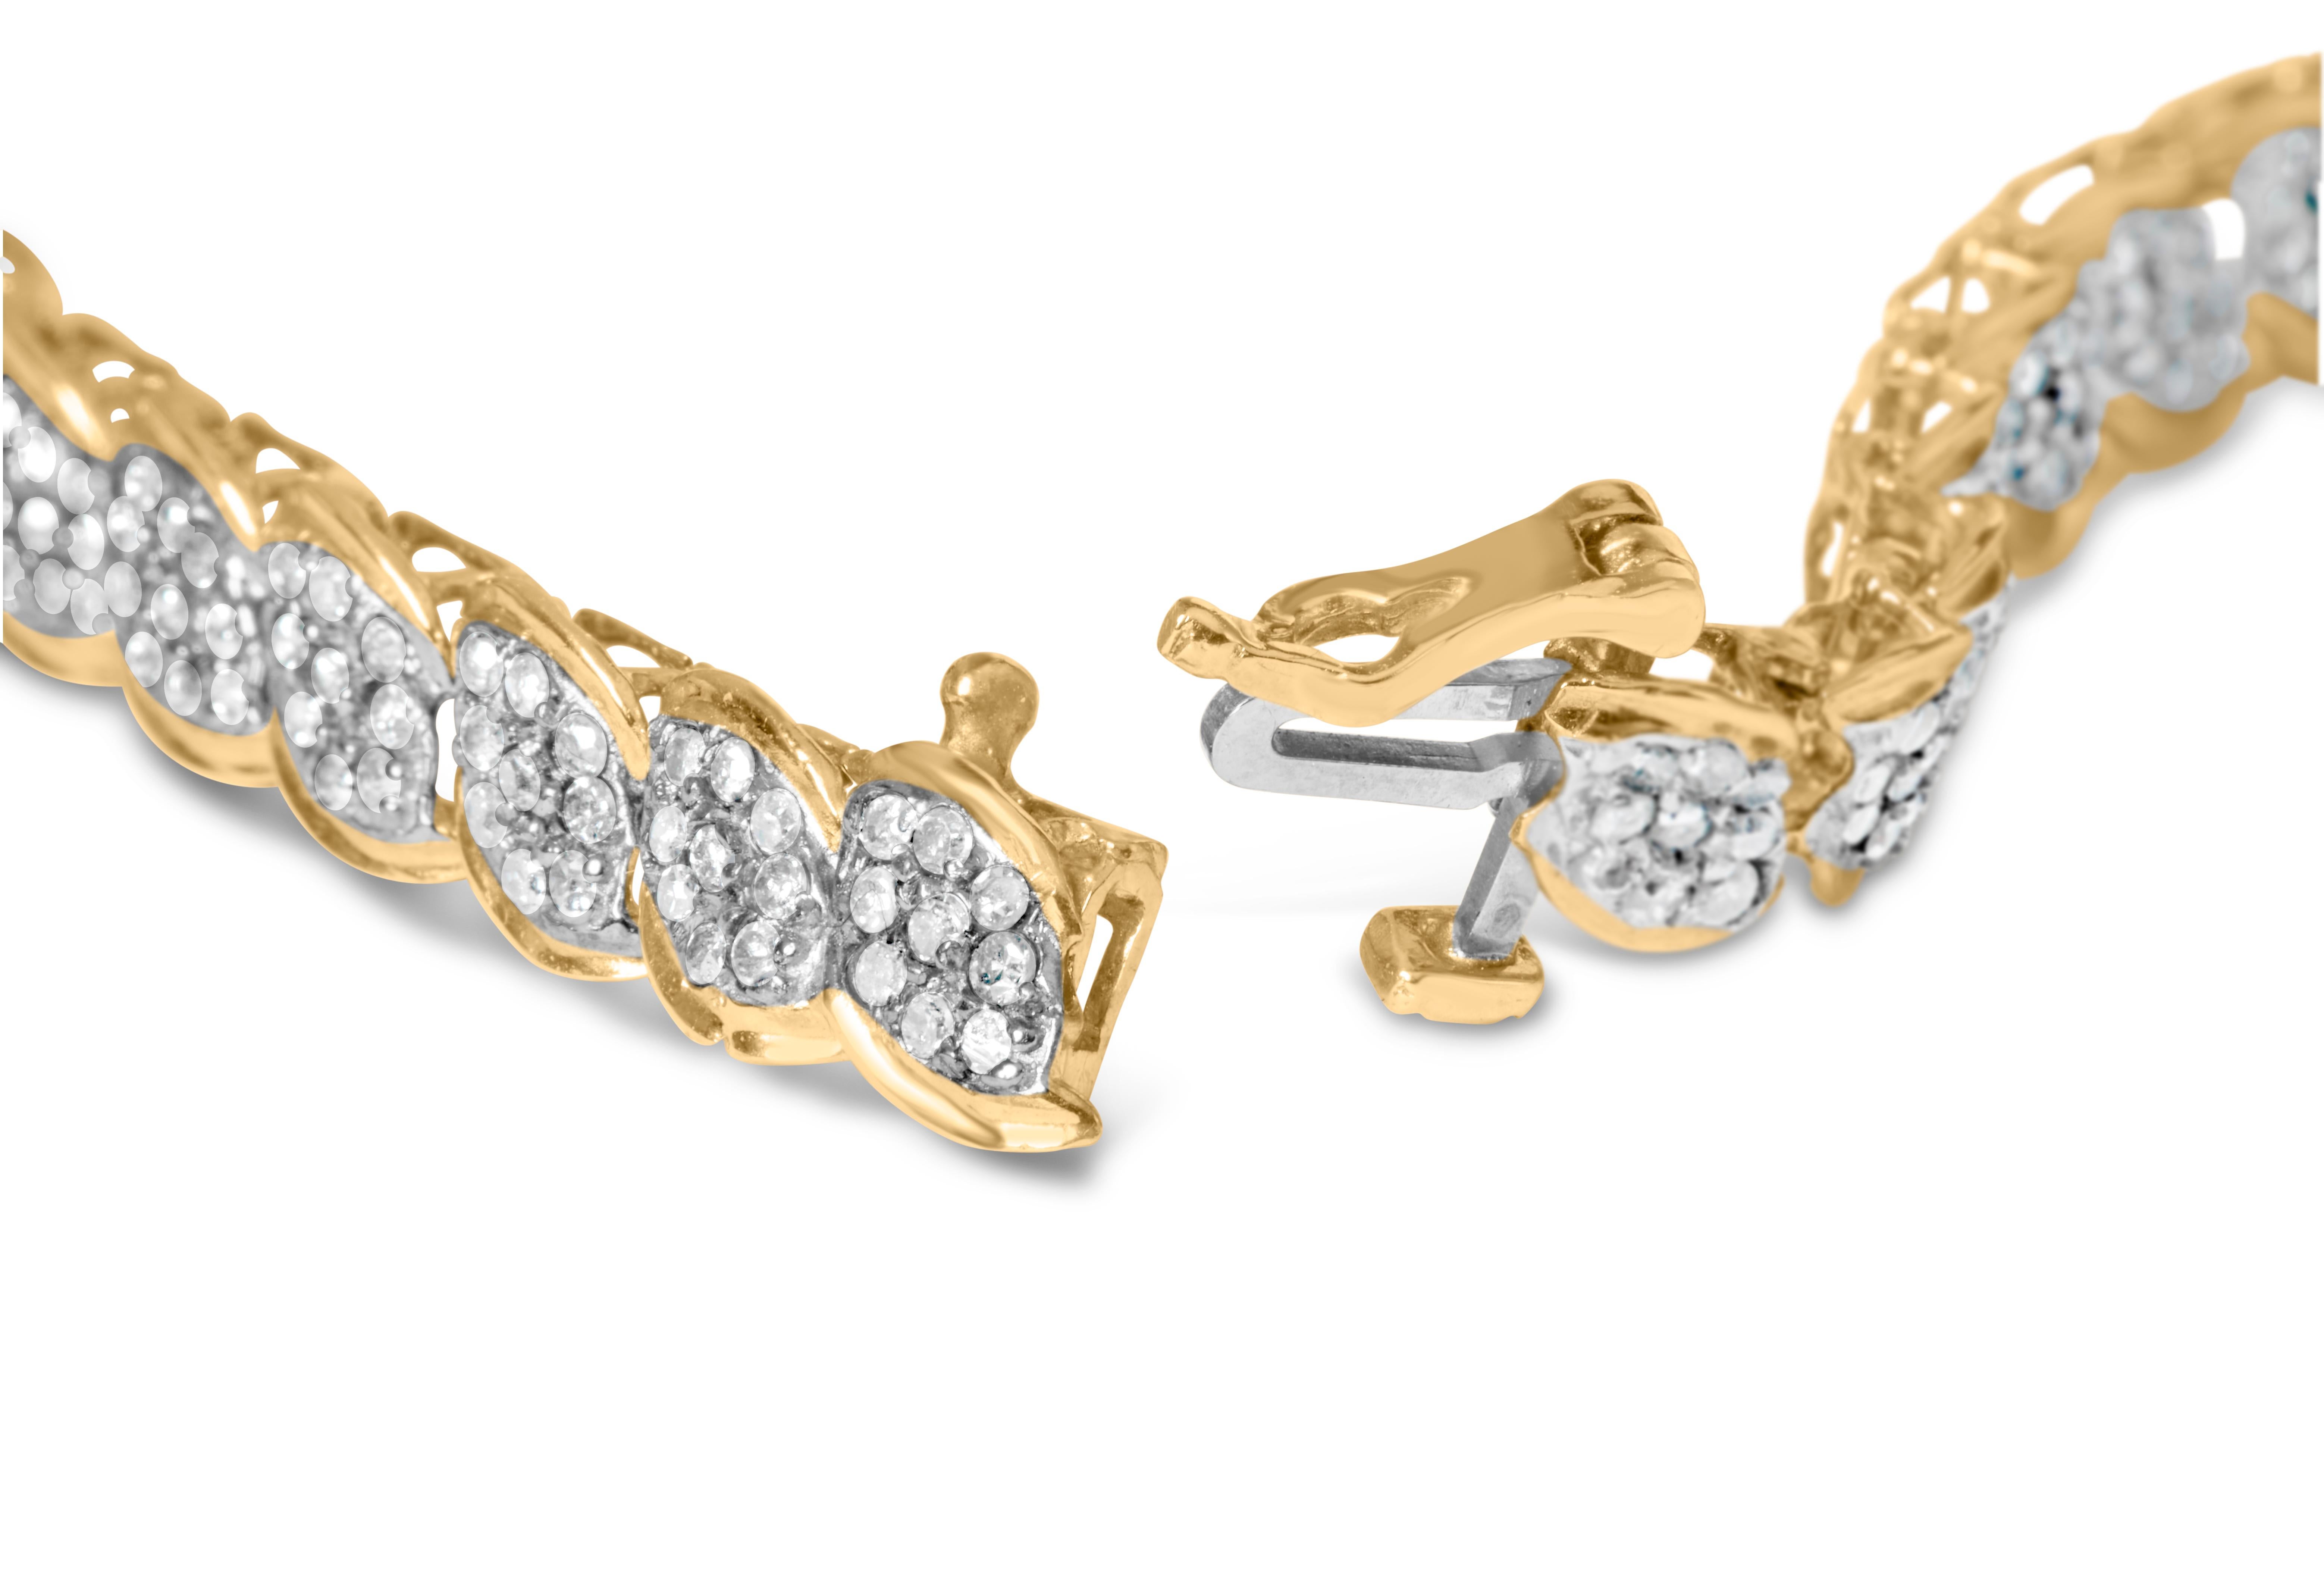 Gönnen Sie sich den Inbegriff von Eleganz mit unserem exquisiten Armband aus 10 Karat Gelbgold. Dieses fesselnde, perfekt gearbeitete Schmuckstück ist mit 306 natürlichen Diamanten im Rundschliff besetzt, die zusammen einen beeindruckenden Wert von